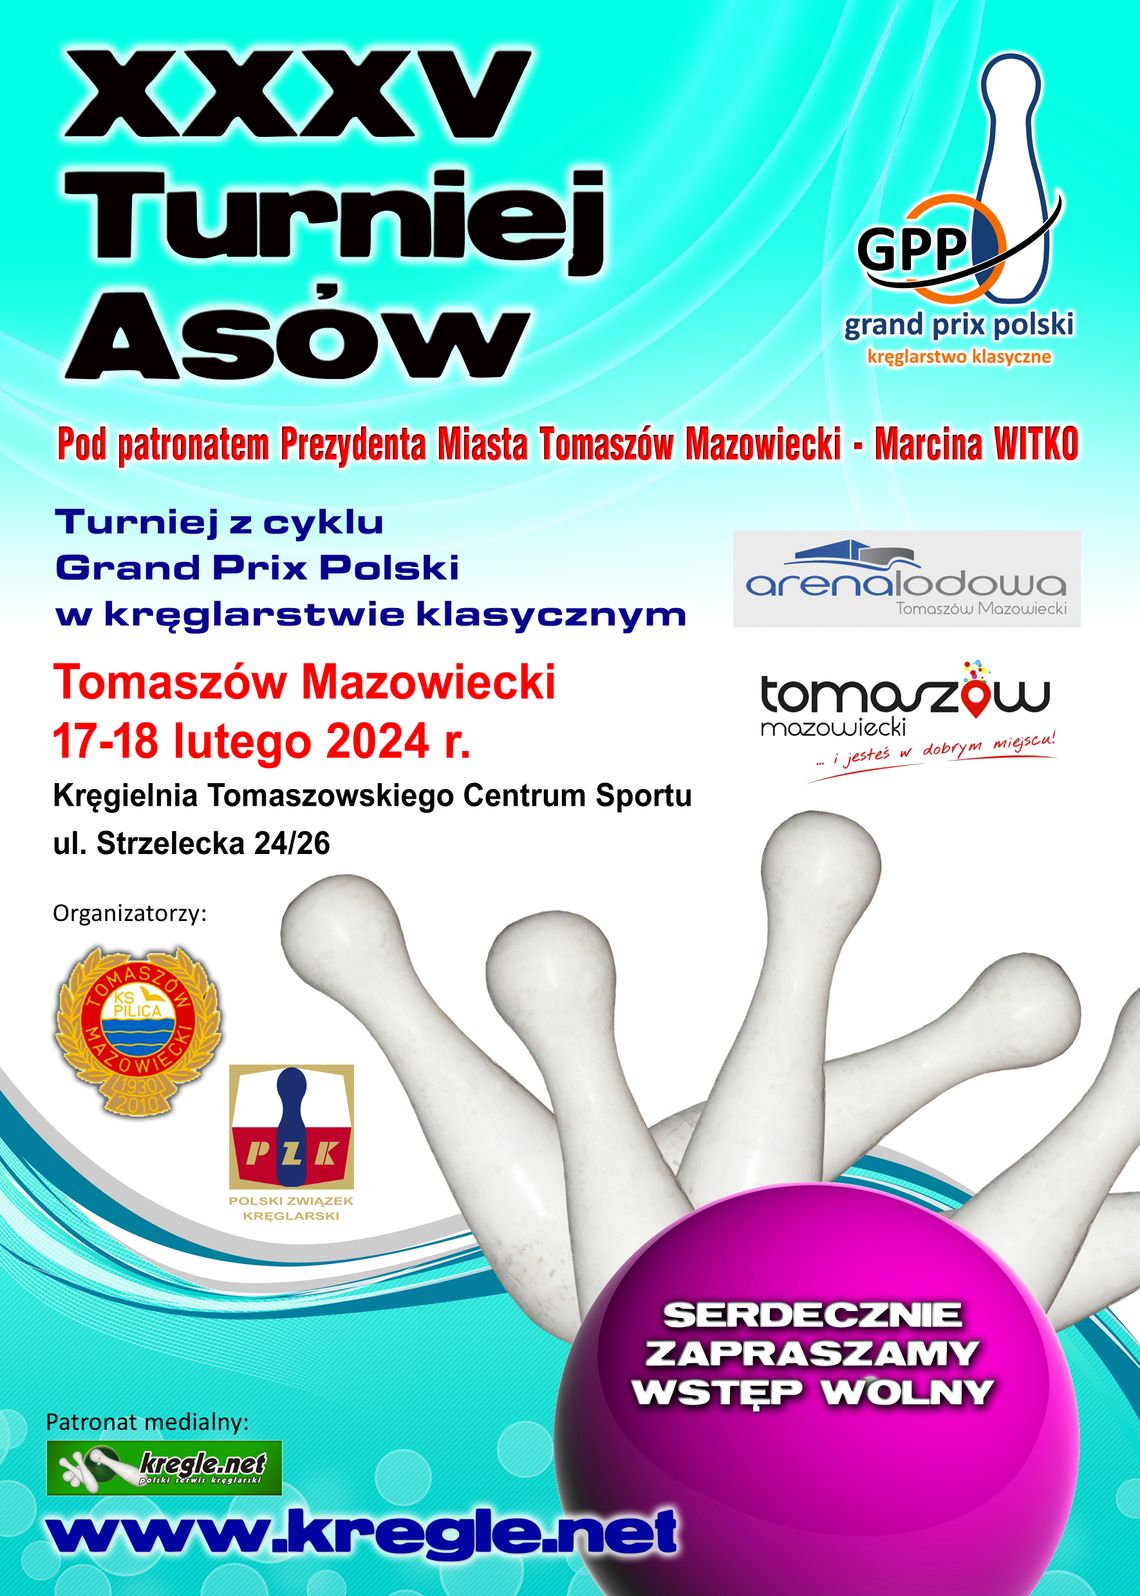 Grand Prix Polski - XXXV Turniej "ASÓW" w  kręglarstwie klasycznym